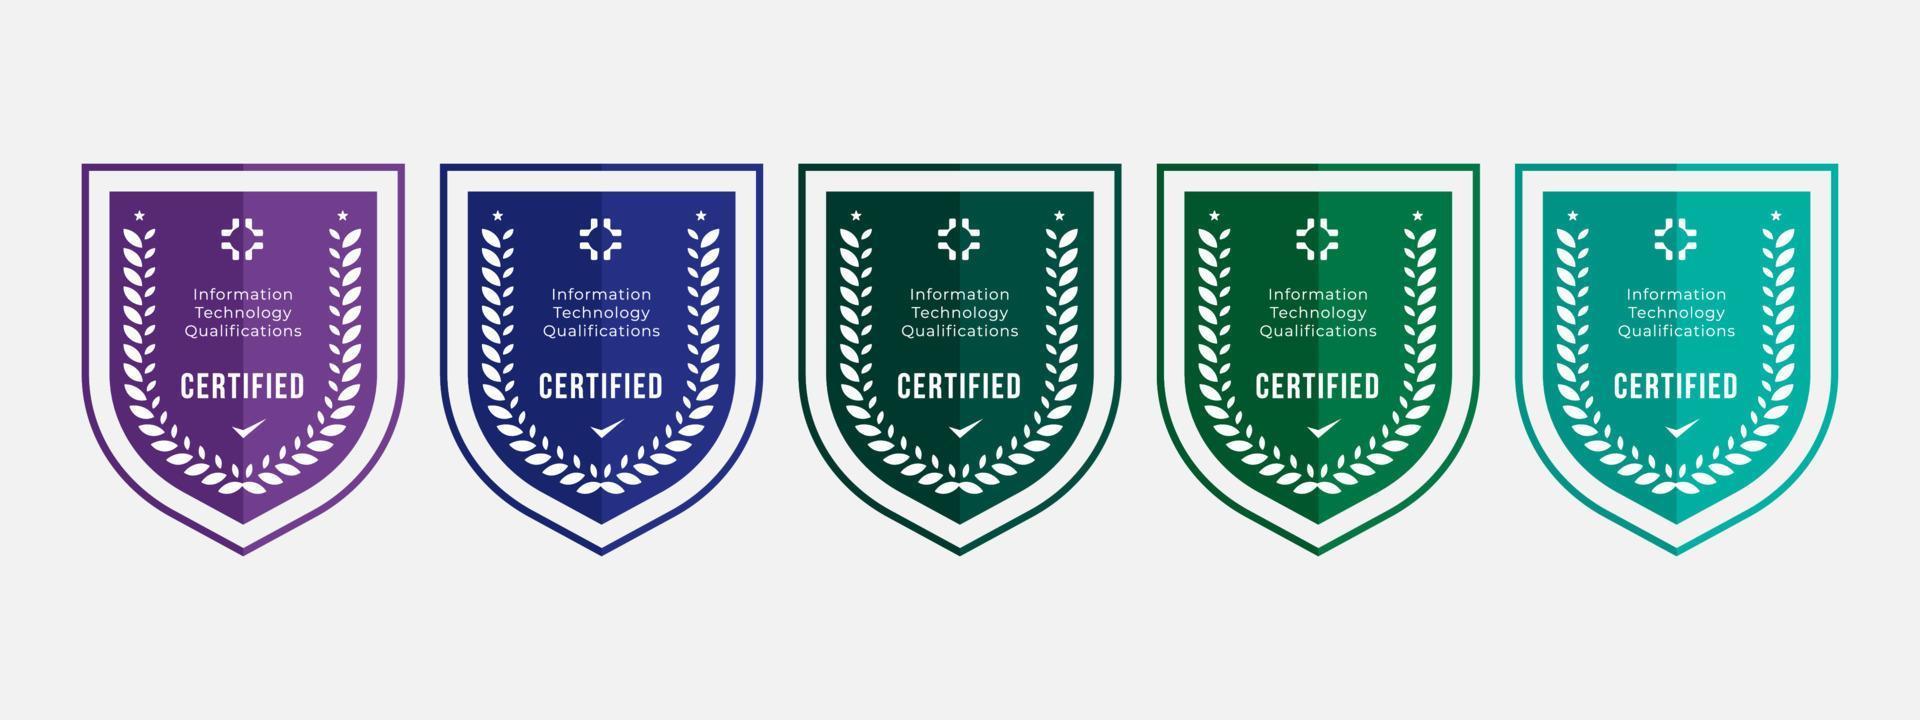 gecertificeerd logo badge schild ontwerp voor bedrijfstraining badge certificaten tot informatietechnologie gekwalificeerd gecertificeerd. set bundel certificeren met kleurrijke beveiligings vectorillustratie. vector